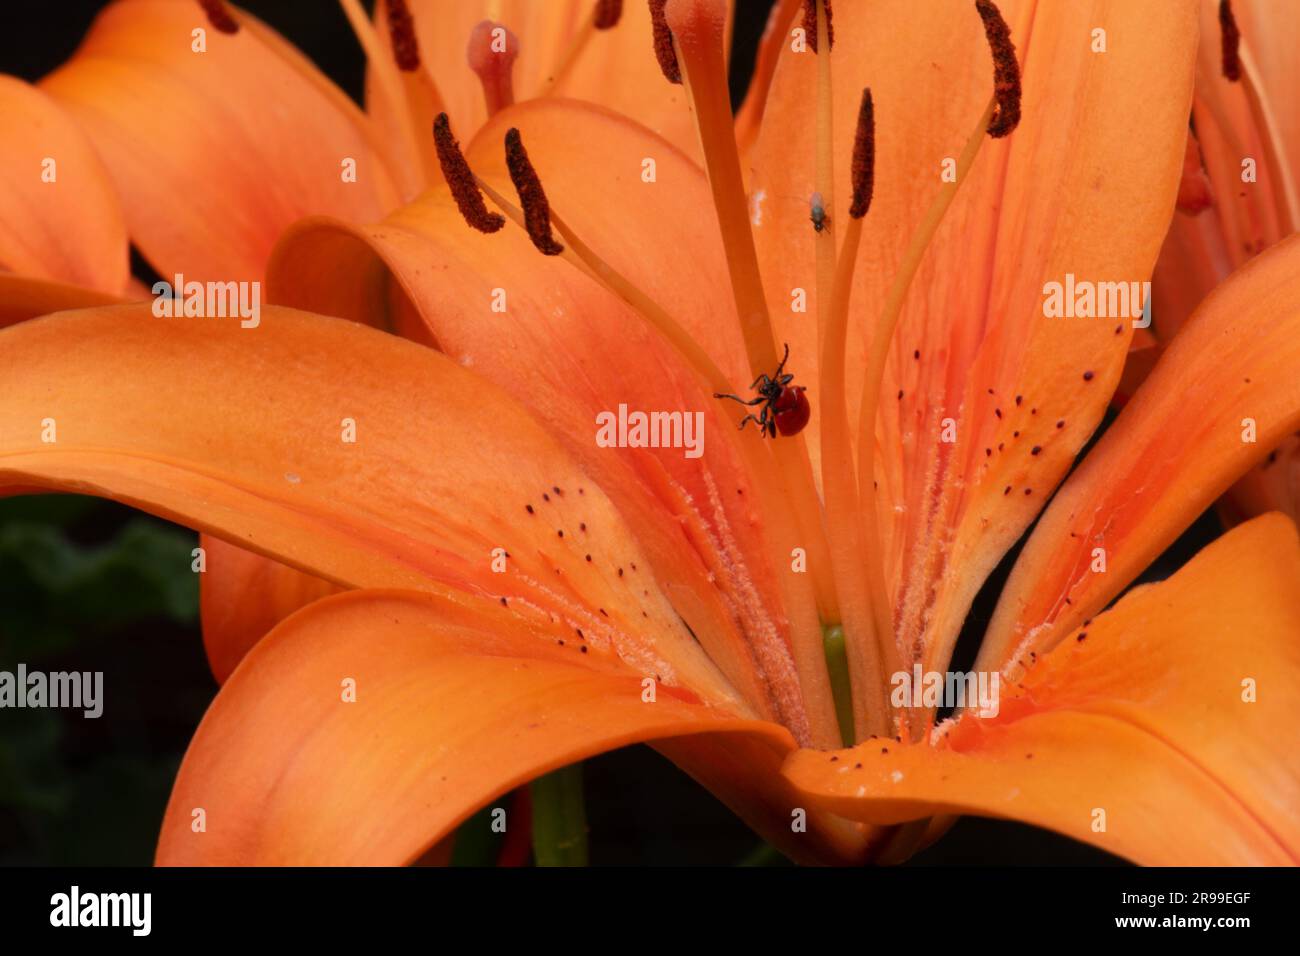 Dwarf orange Asiatic Lily Stock Photo